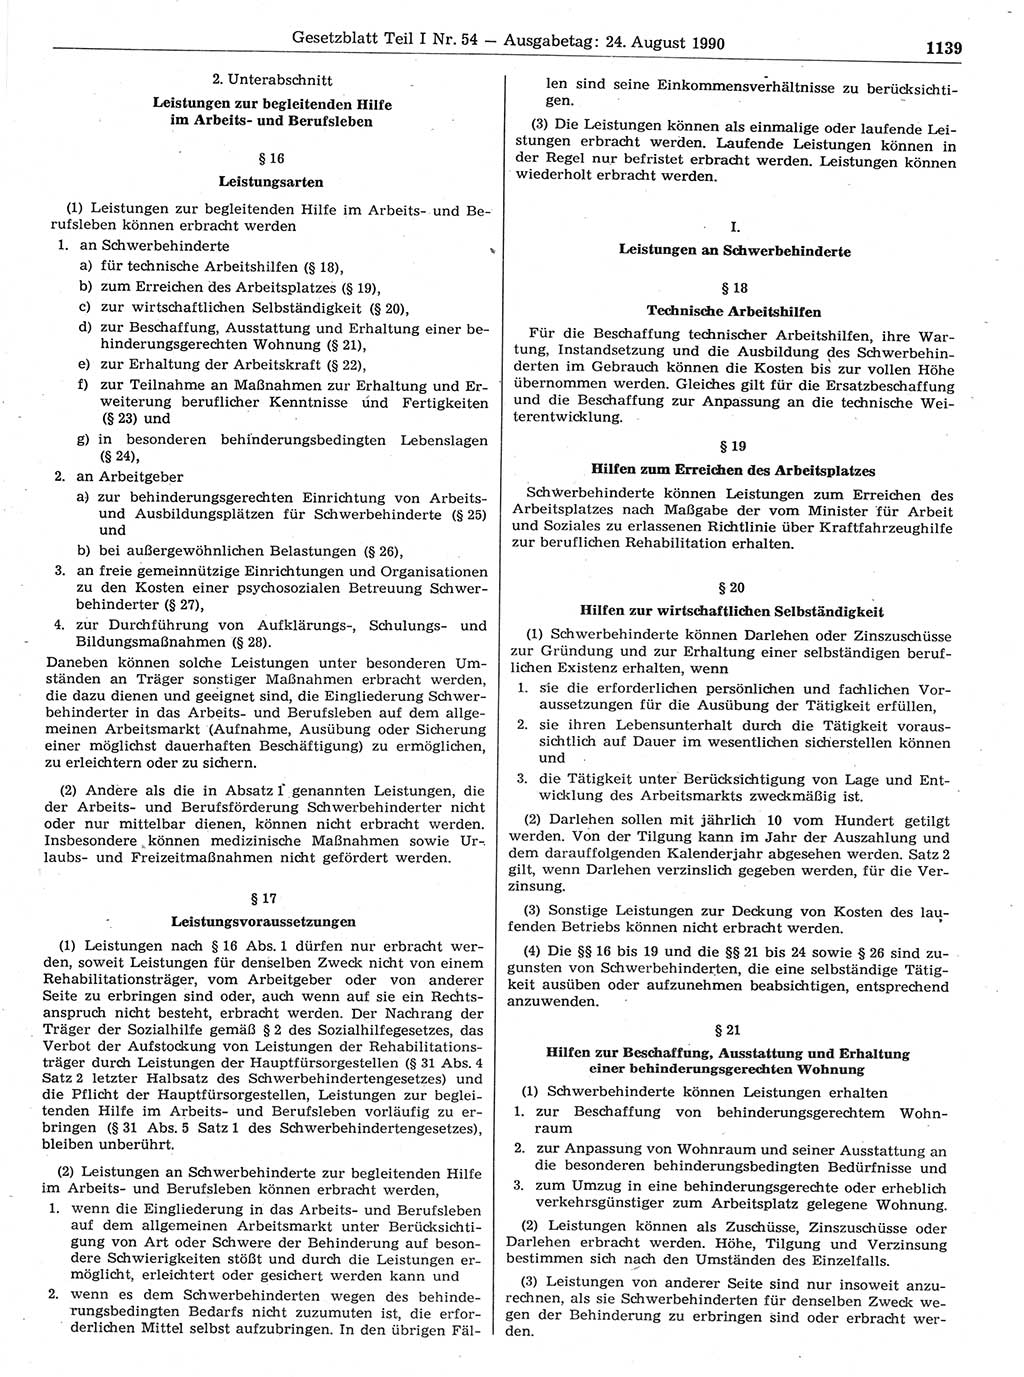 Gesetzblatt (GBl.) der Deutschen Demokratischen Republik (DDR) Teil Ⅰ 1990, Seite 1139 (GBl. DDR Ⅰ 1990, S. 1139)